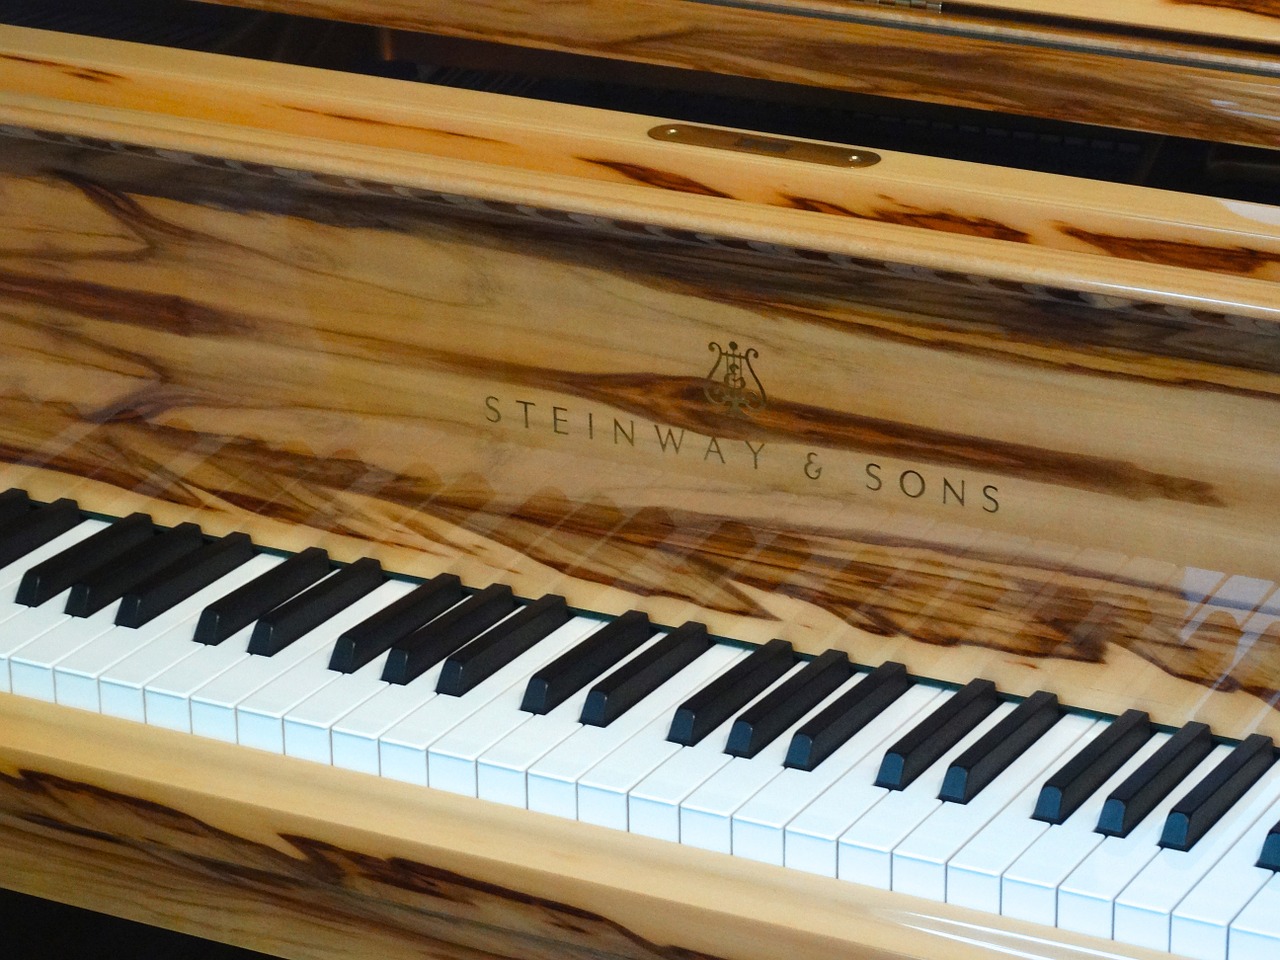 piano piano keys wood instrument free photo